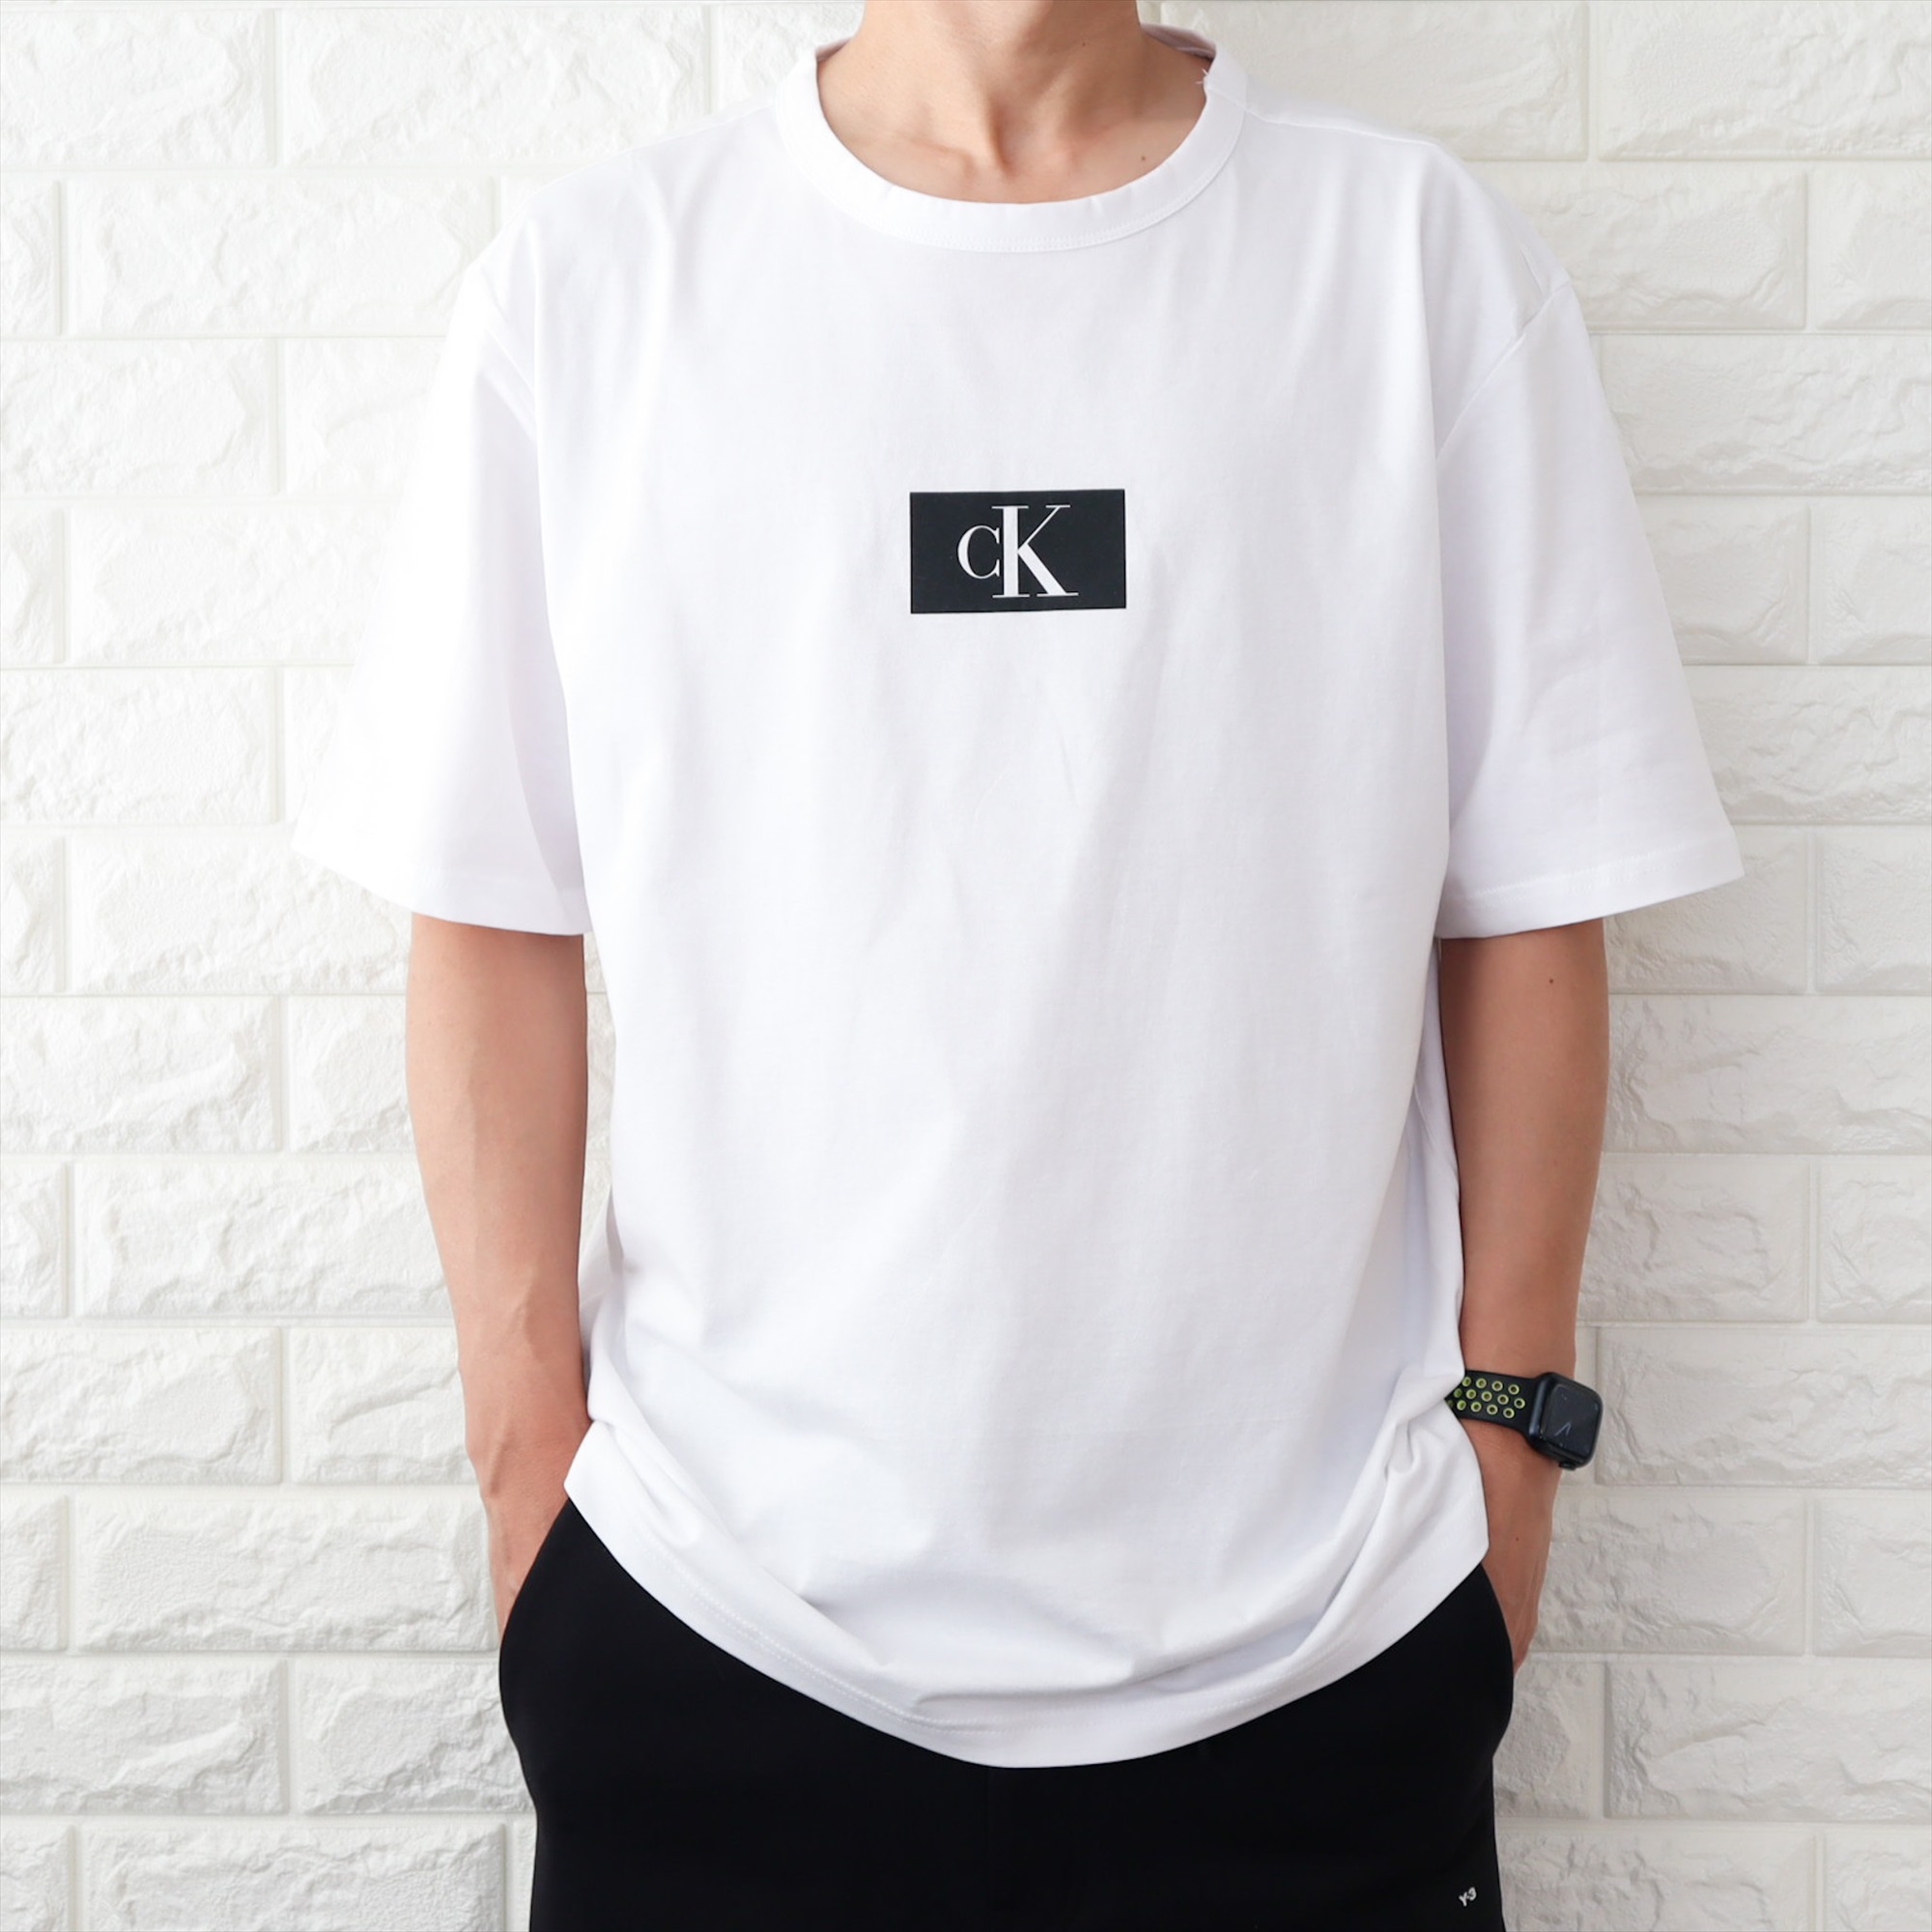 カルバンクライン Tシャツ メンズ ブラック 黒 ホワイト 白 CK ボックスロゴ Tシャツ ユニセ...